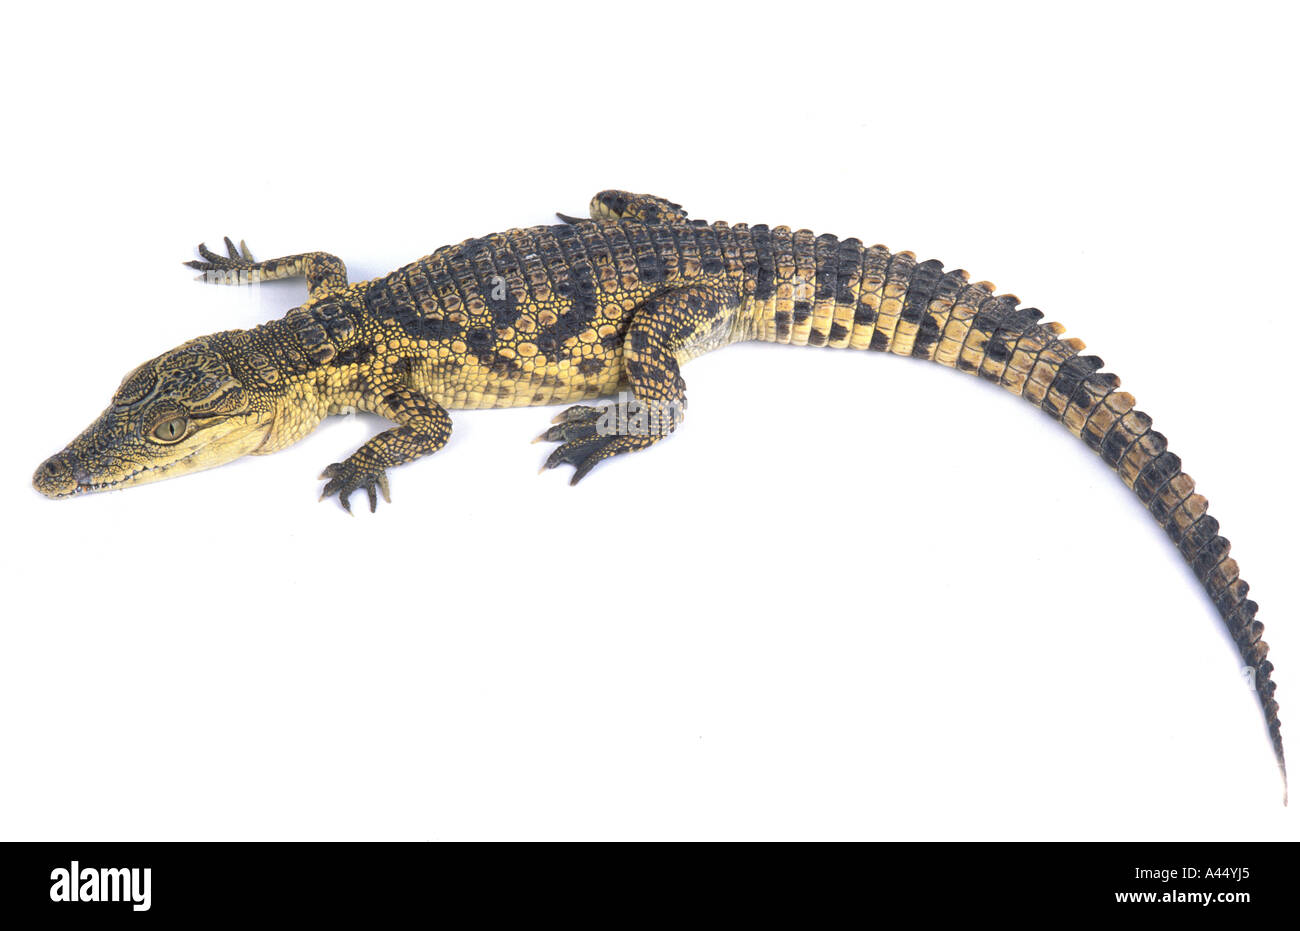 Crocodile du Nil Crocodylus niloticus Crocodile du Nil de l'Afrique du Sud nature animaux ovipares reptiles grand vert de la rivière africaine wate Banque D'Images